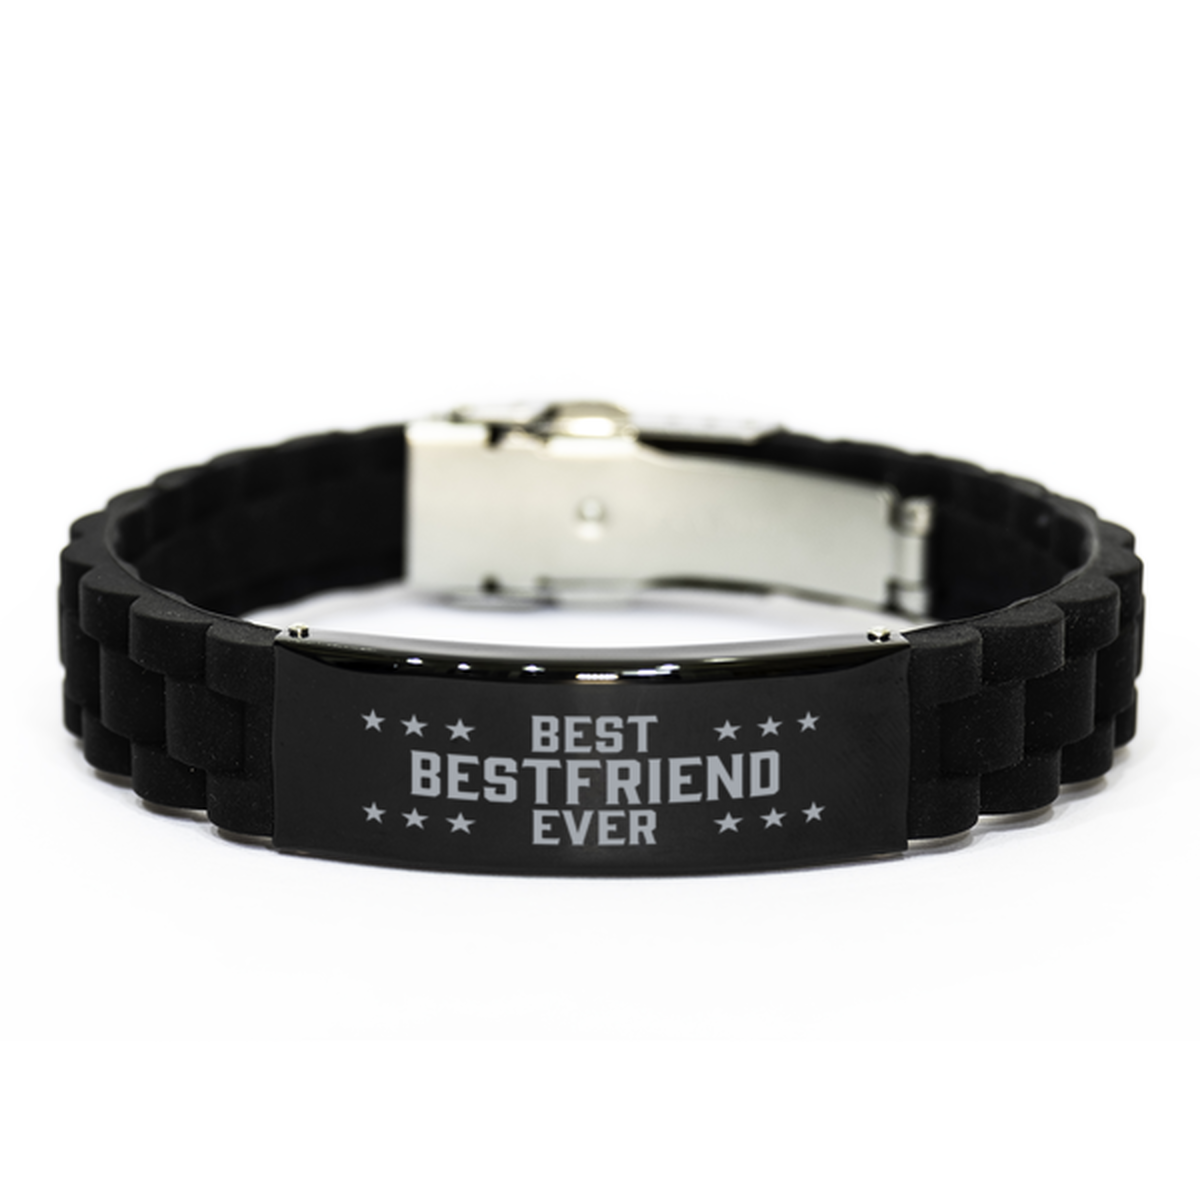 Best Bestfriend Ever Bestfriend Gifts, Funny Black Engraved Bracelet For Bestfriend, Family Gifts For Men Women